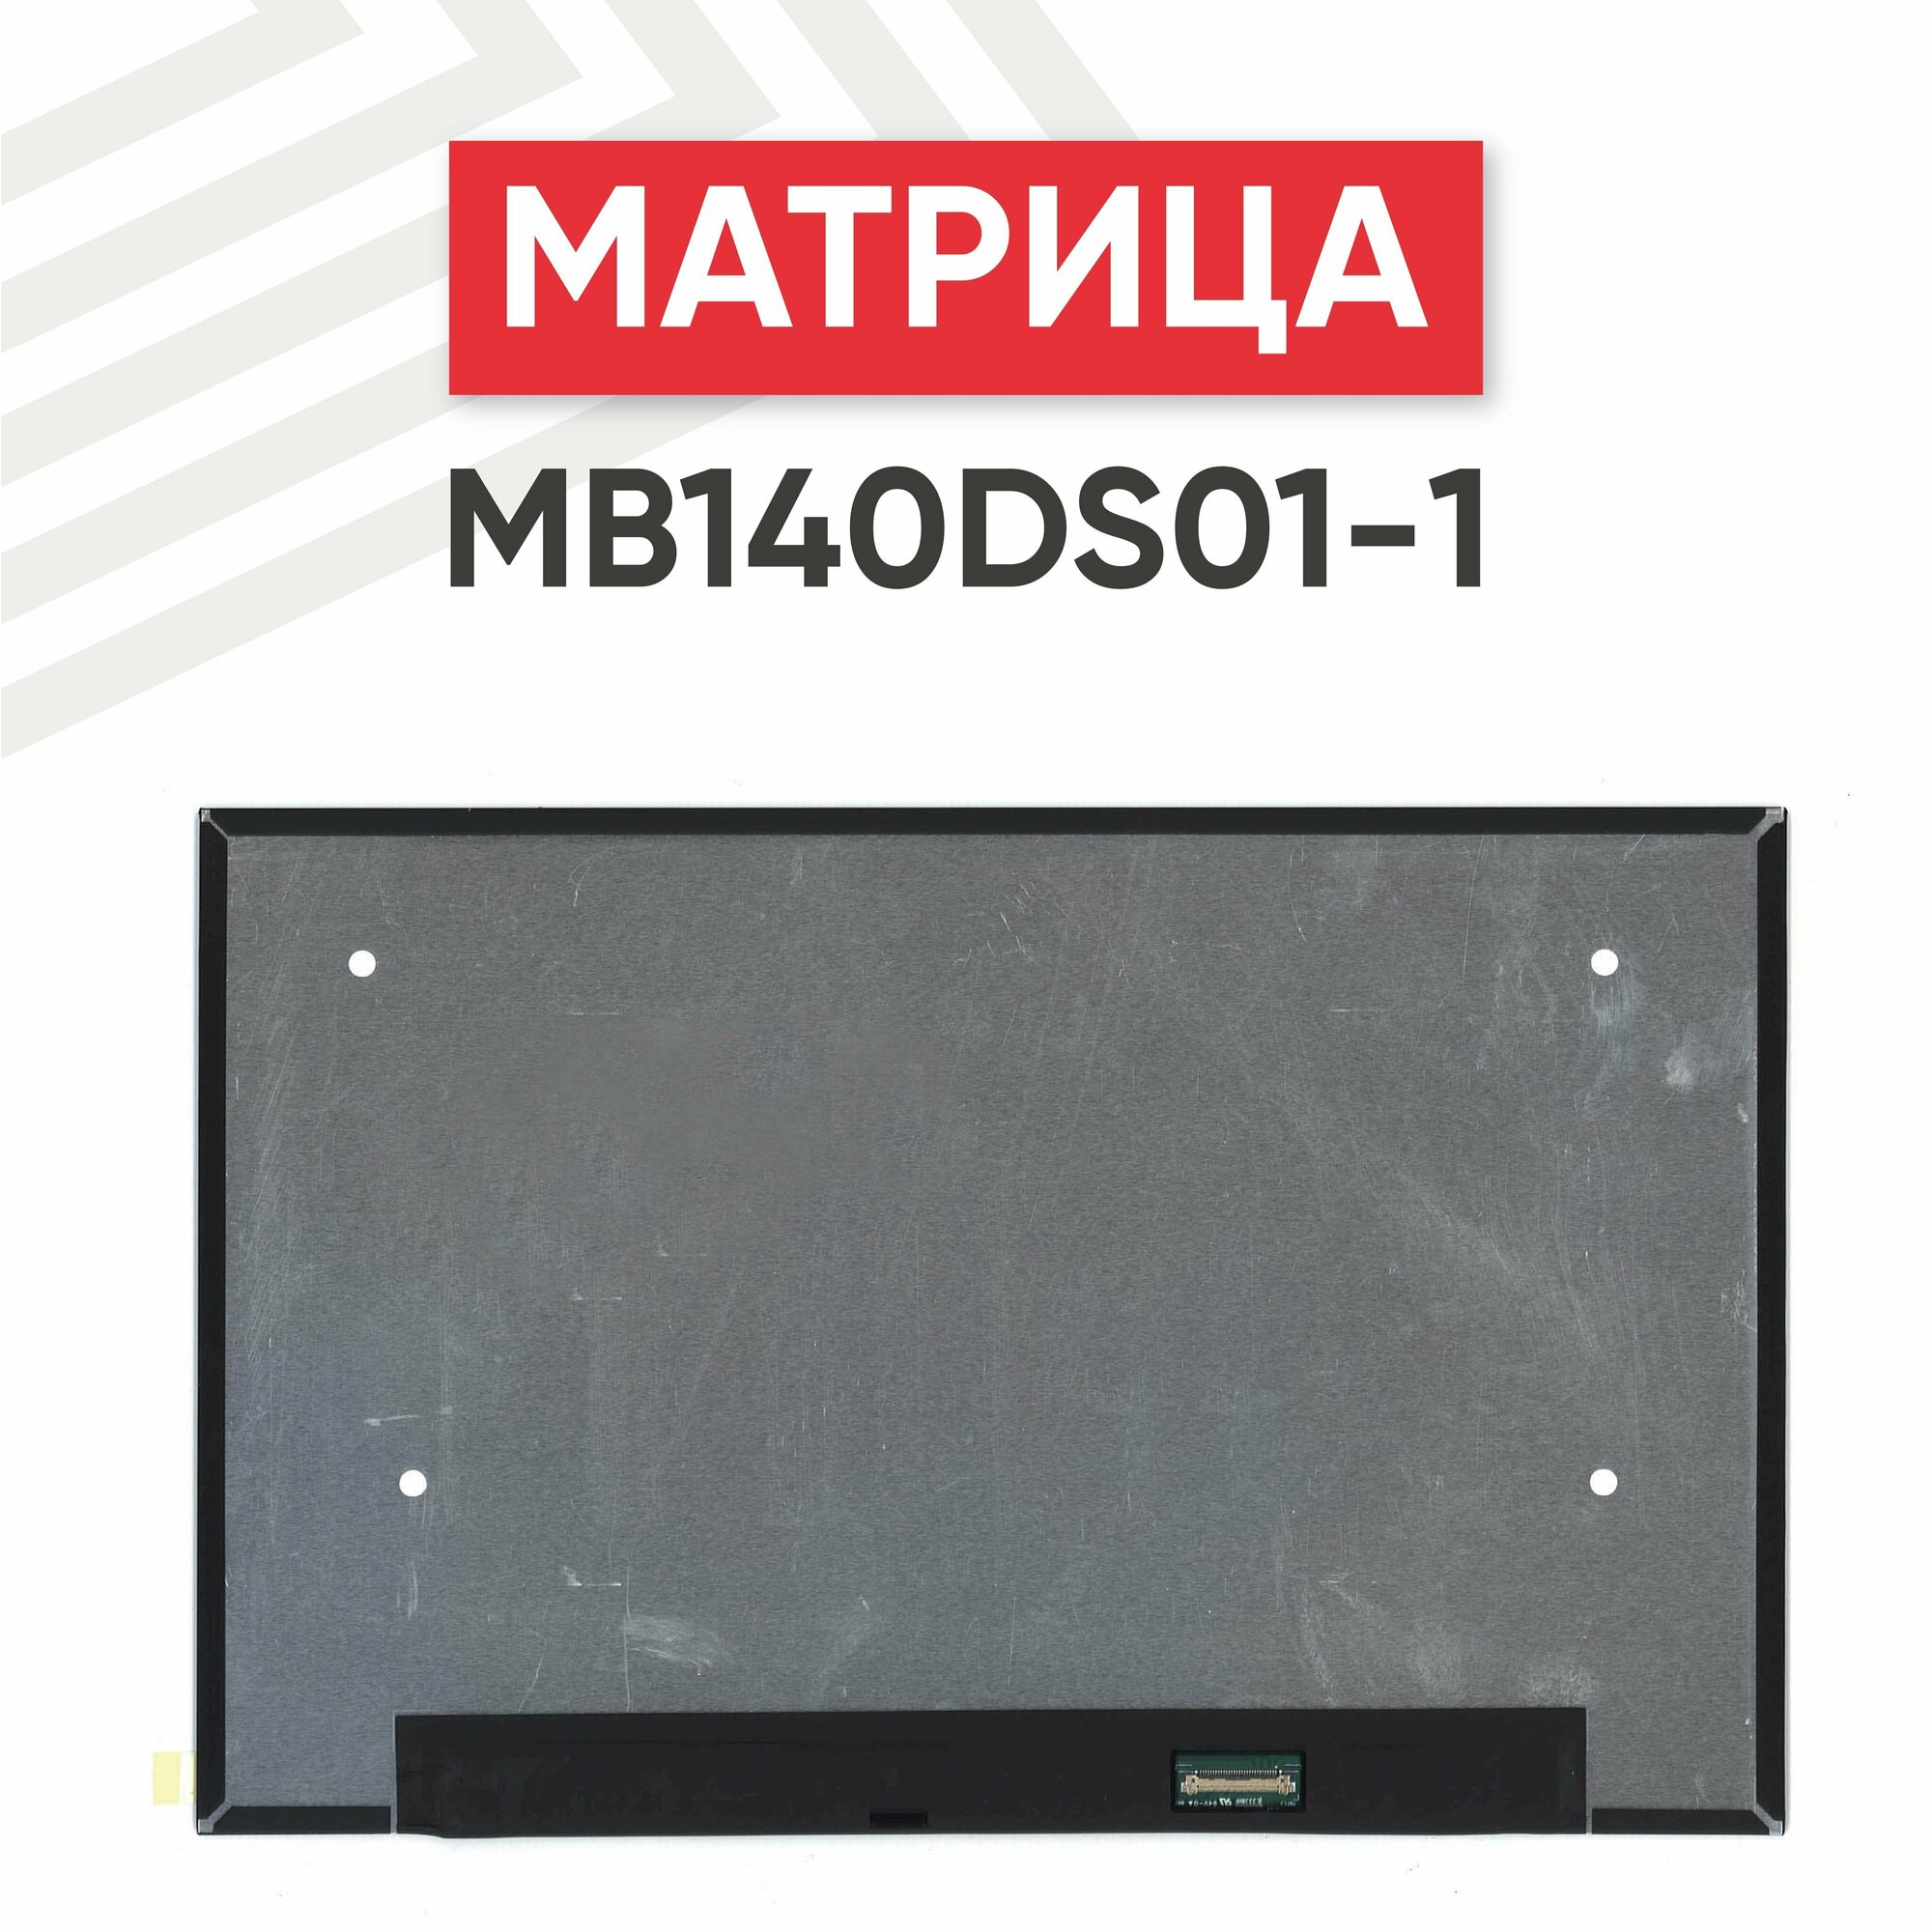 Матрица (экран) MB140DS01-1